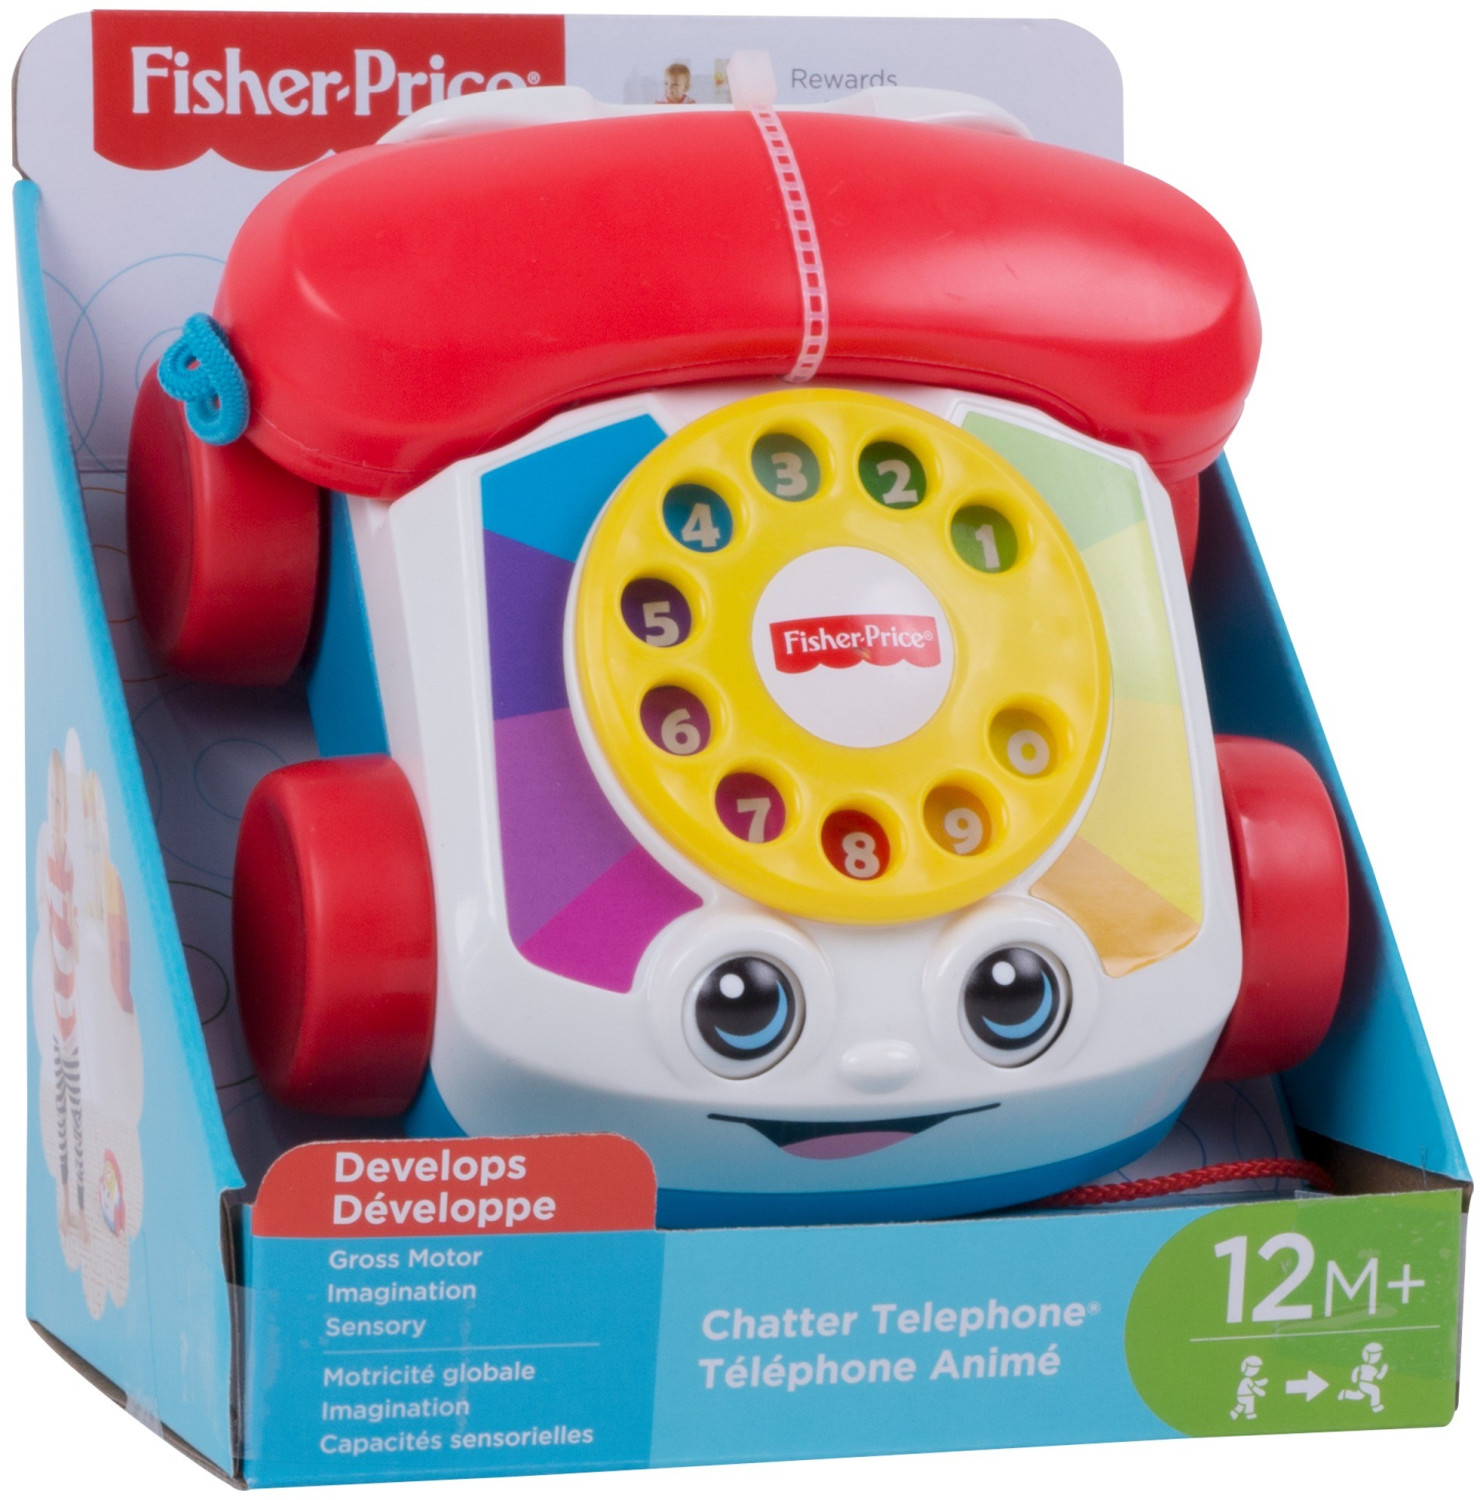 Telephone jouet bebe - Trouvez le meilleur prix sur leDénicheur